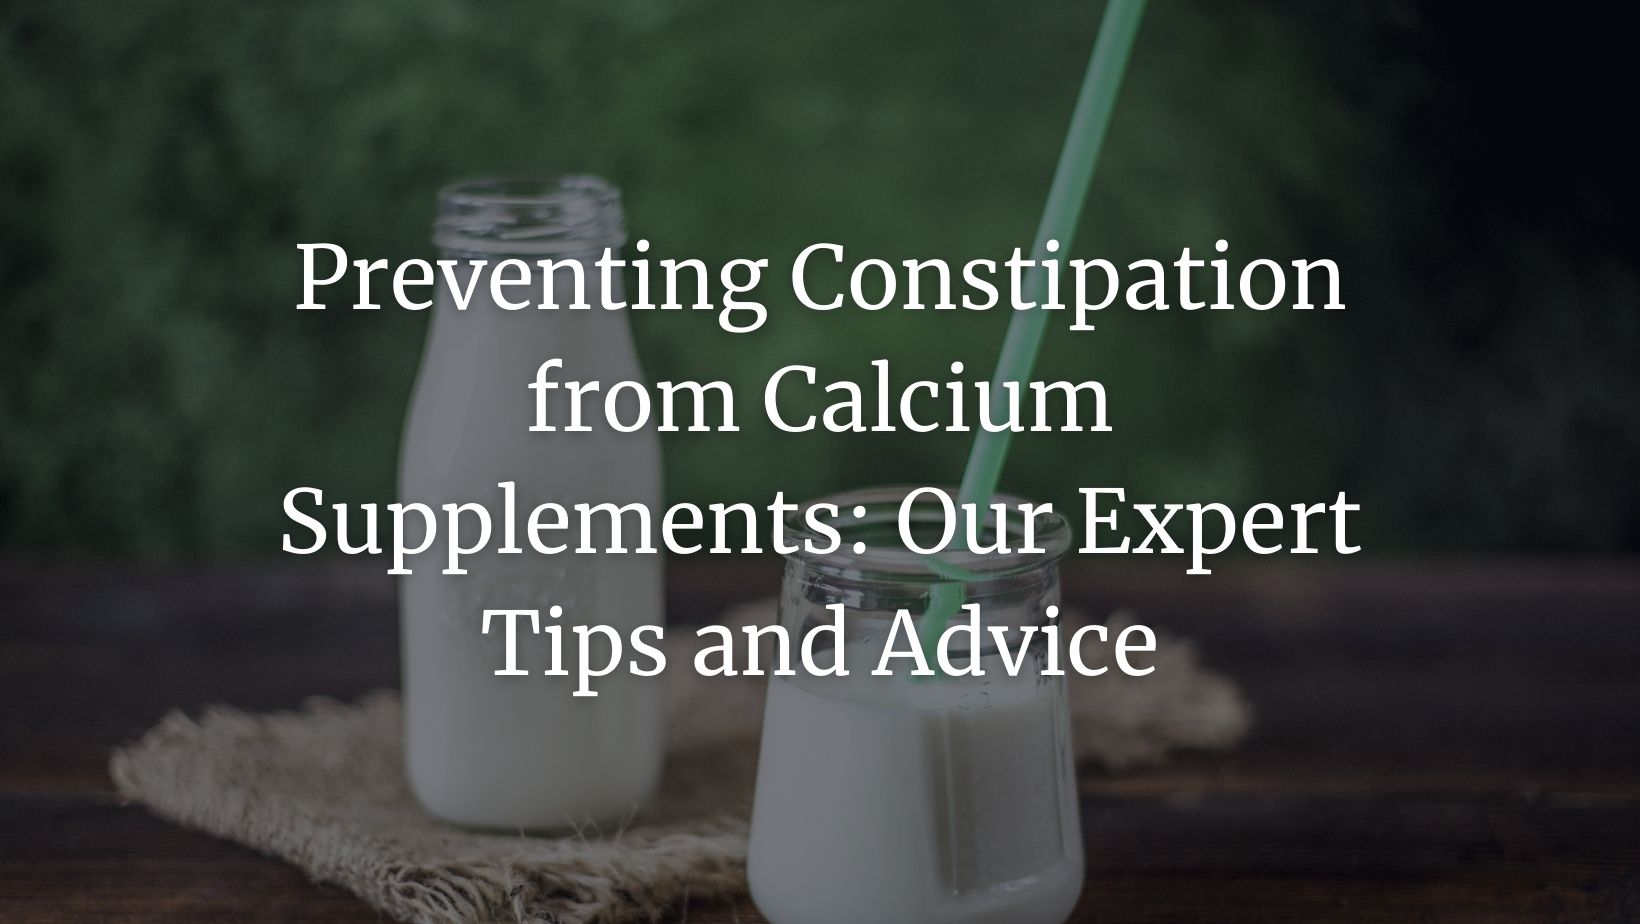 calcium constipation featured image